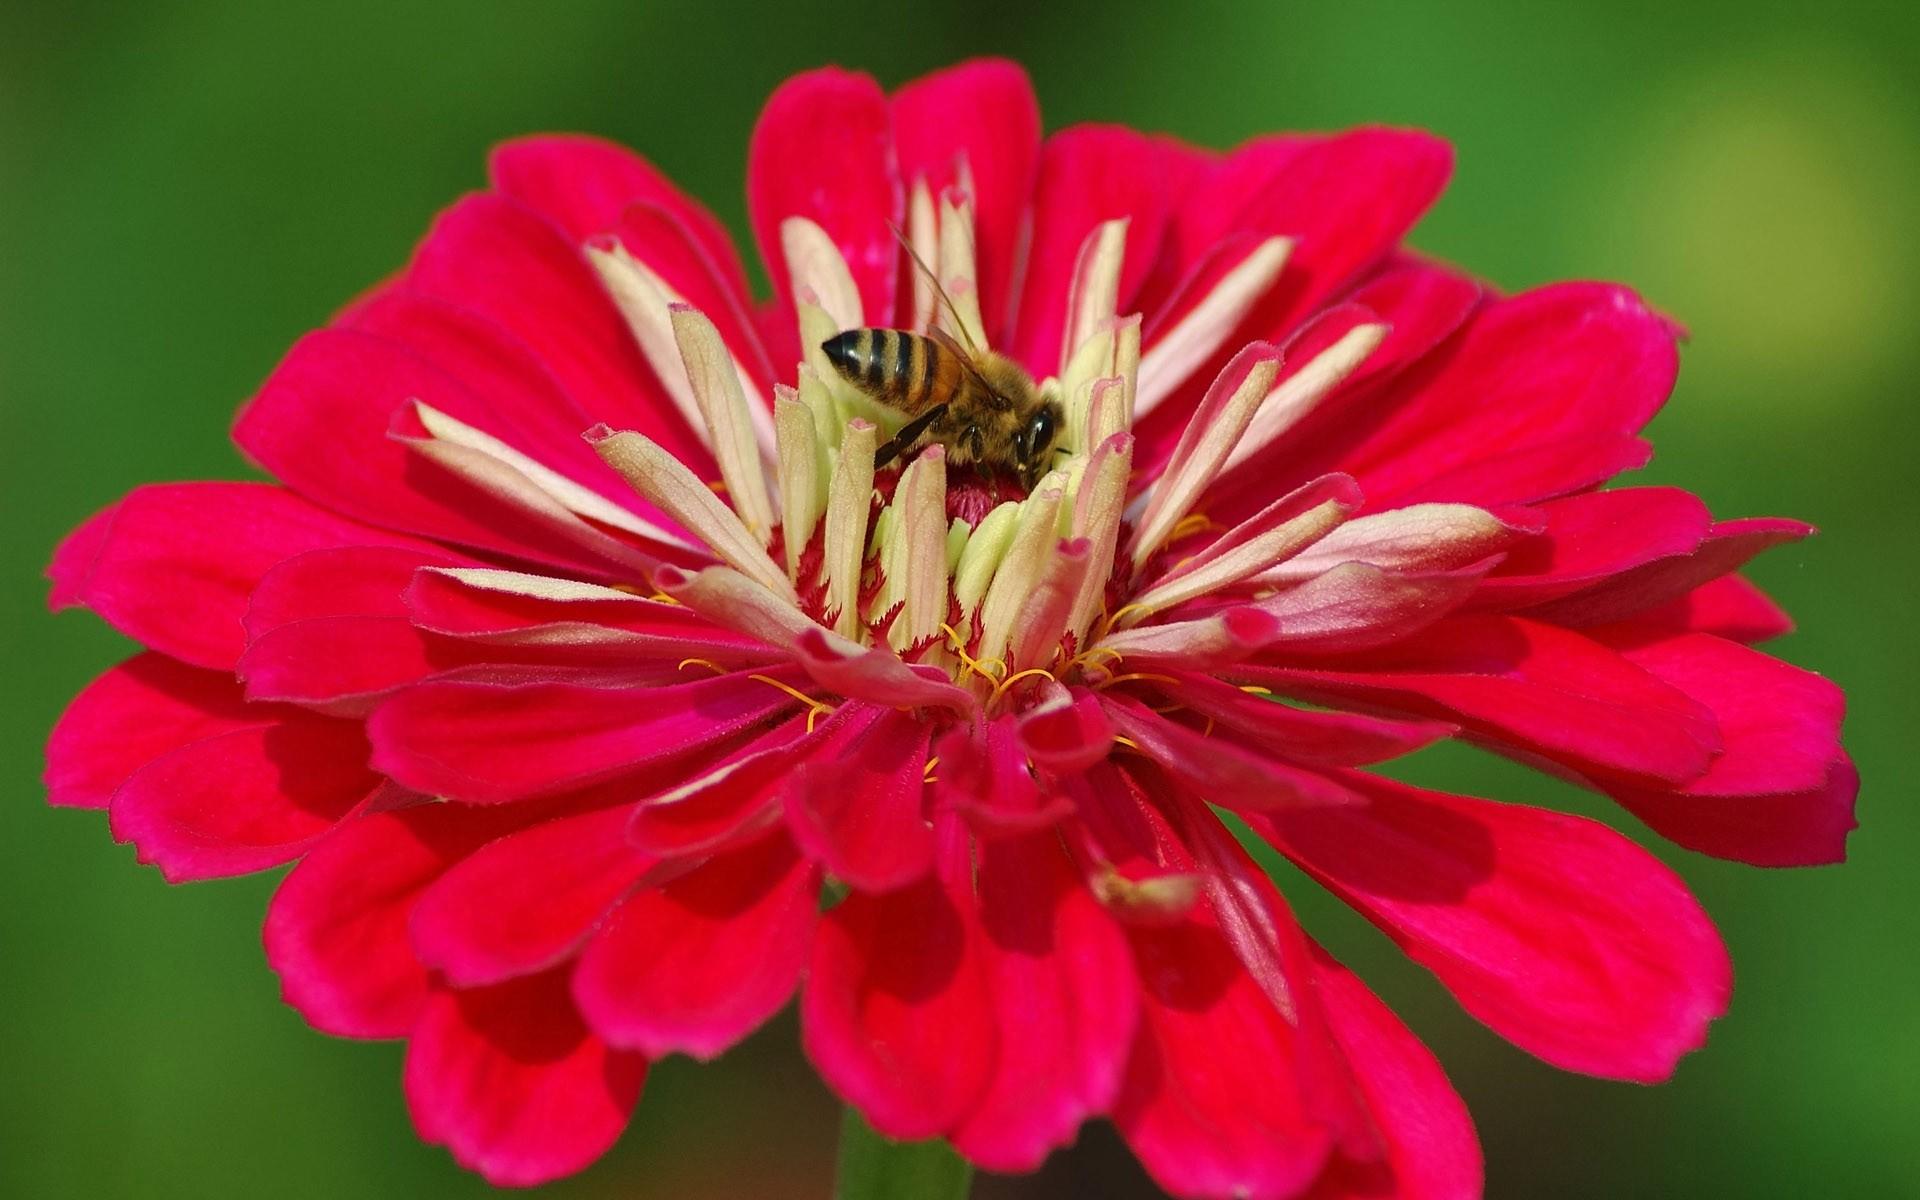 高清蜜蜂采蜜时拍摄的图片大全6